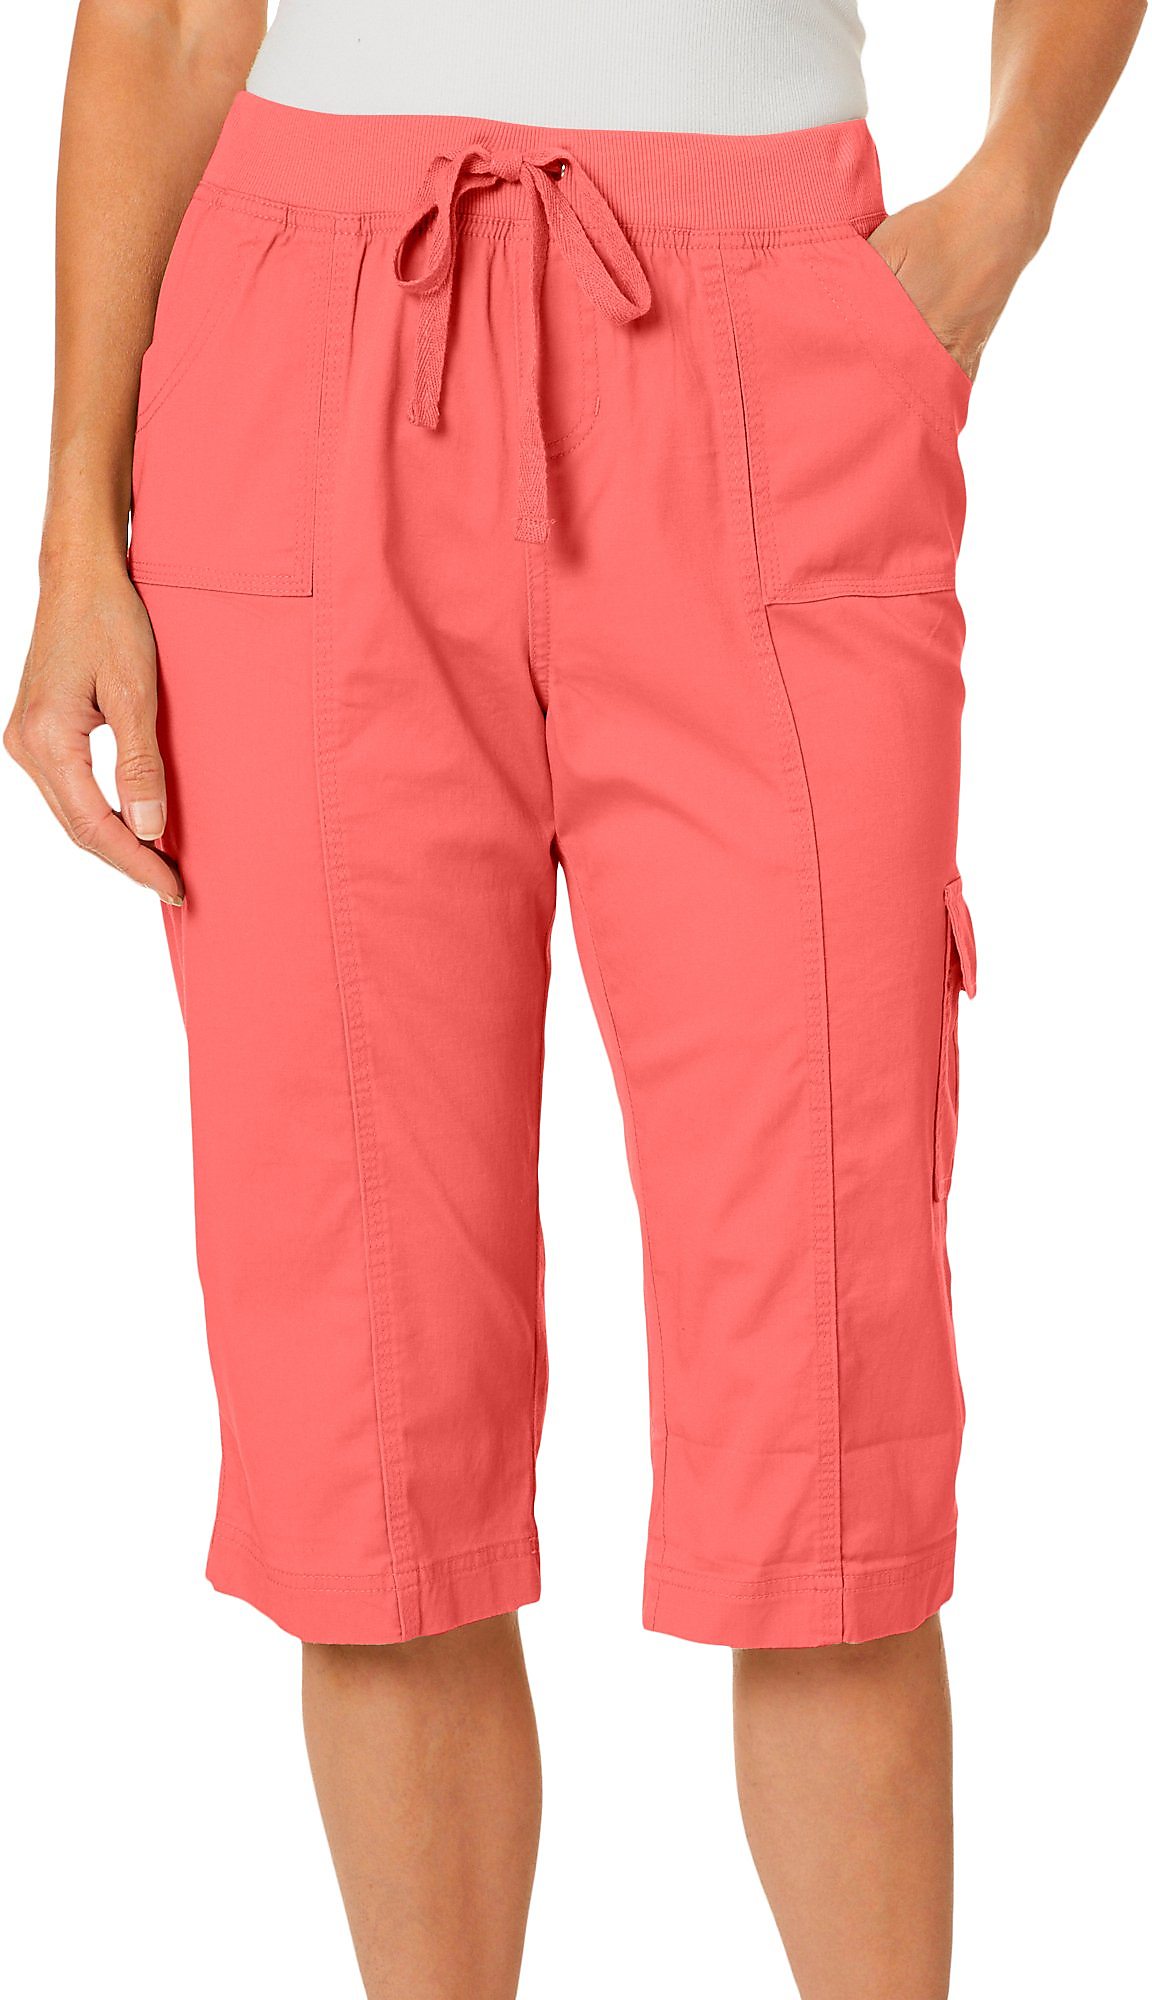 Fresh Petite Solid Pull On Skimmer Shorts | eBay